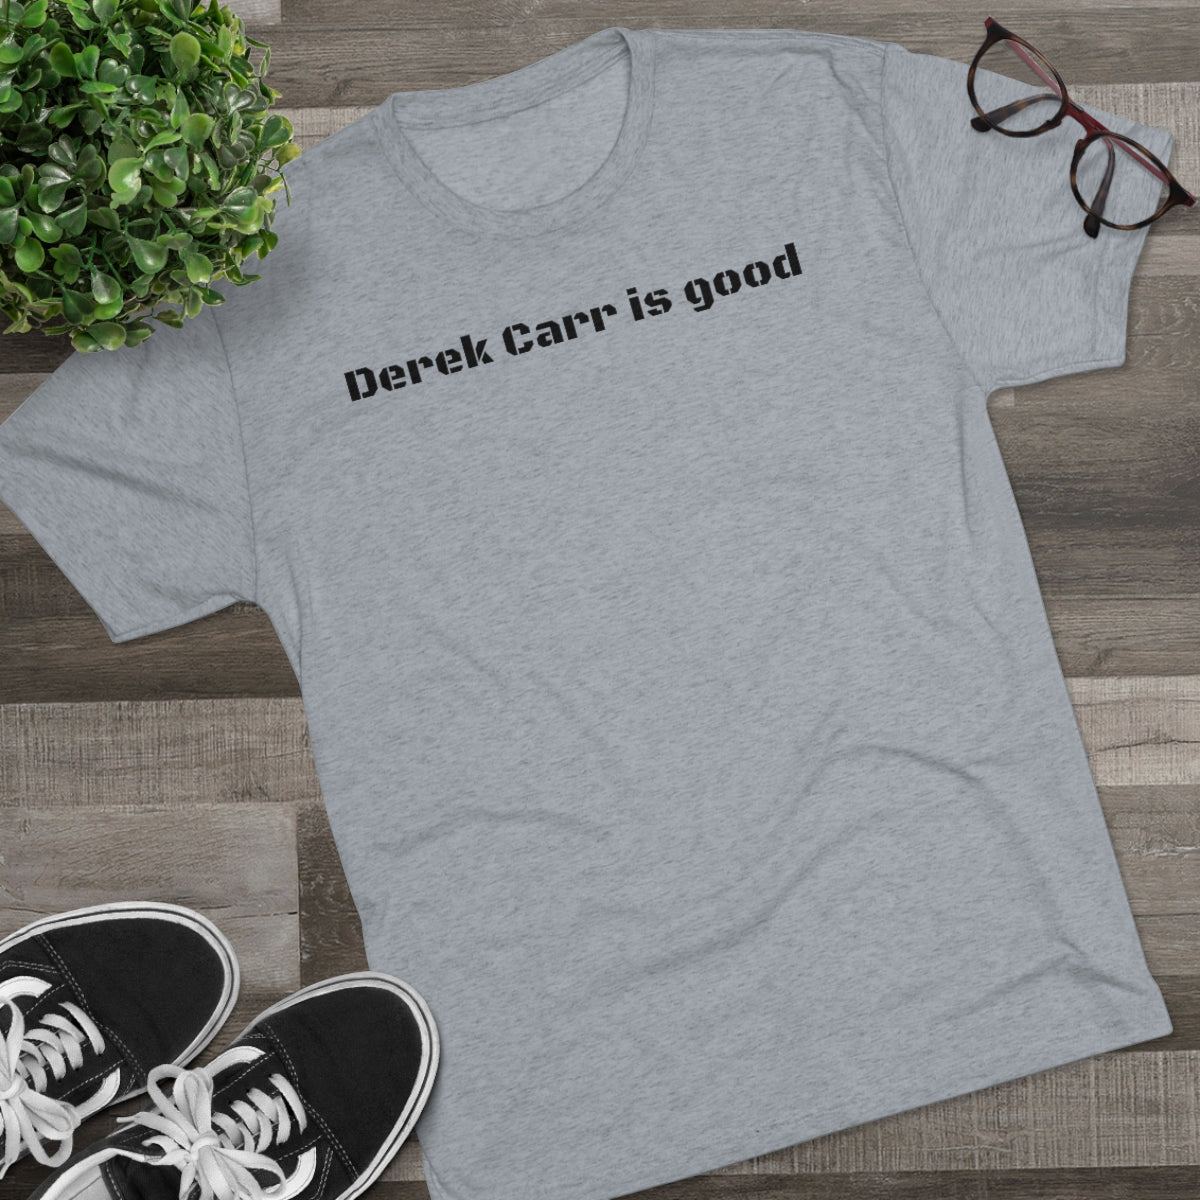 Derek Carr is good T-Shirt - IsGoodBrand